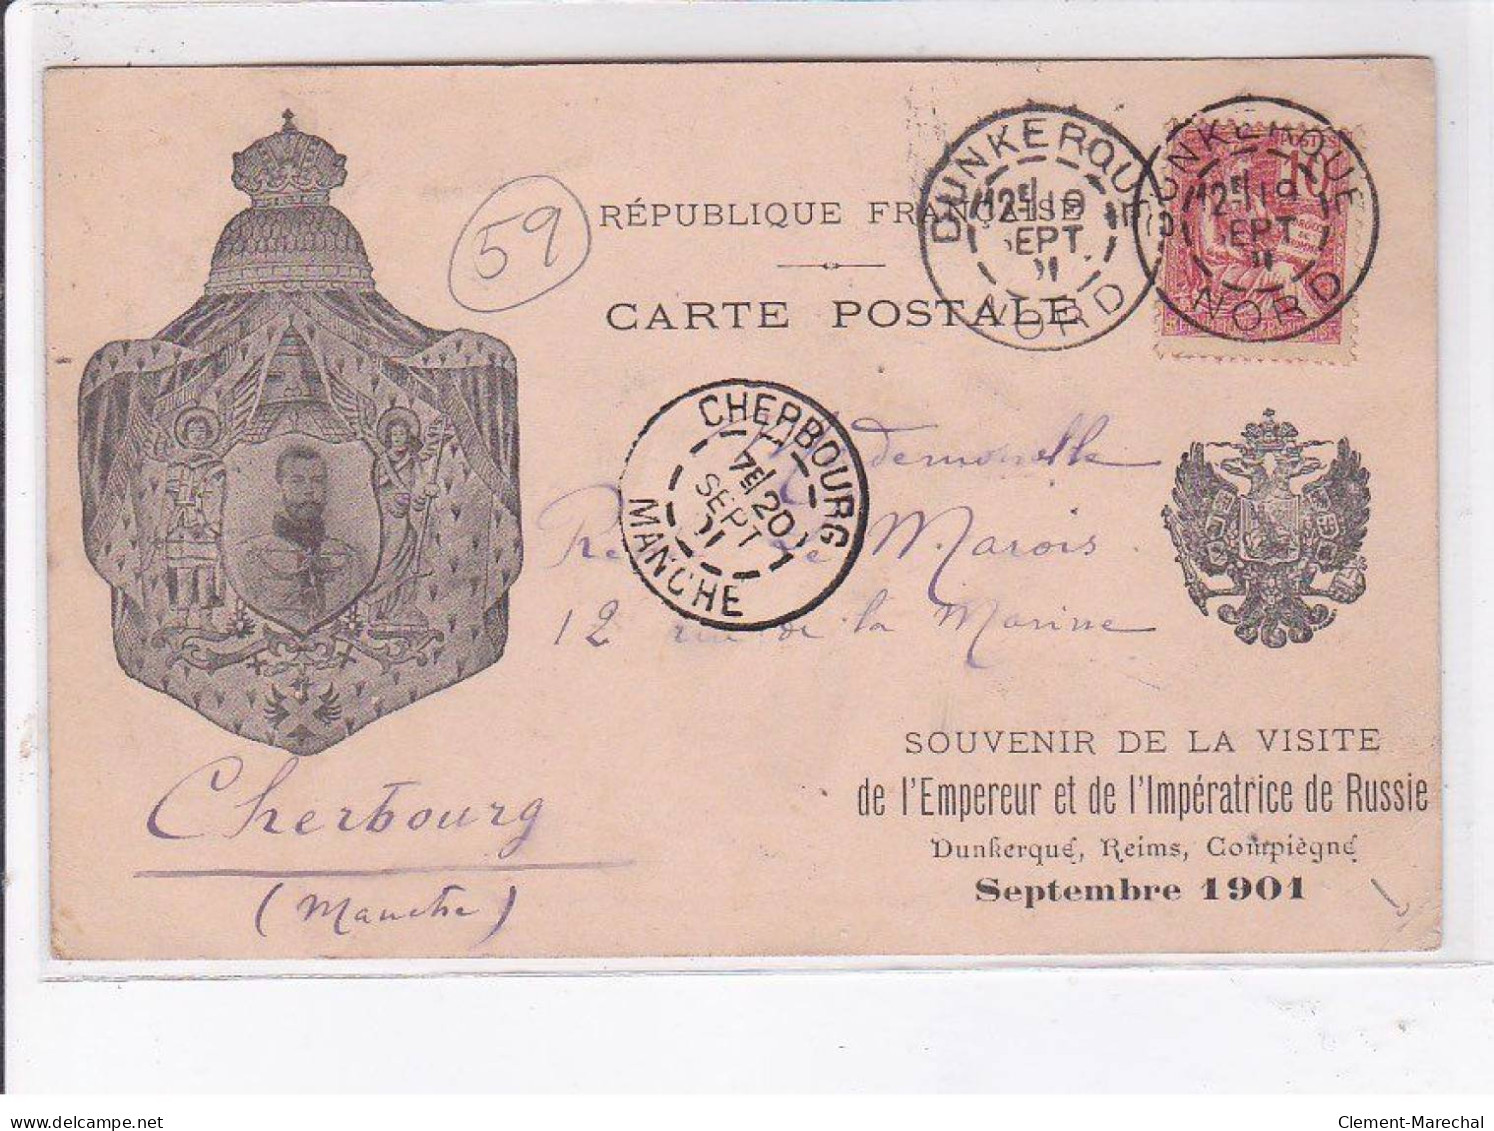 DUNKERQUE: Souvenir De La Visite De L'empereur Et De L'impératrice De Russie Septembre 1901 - état - Dunkerque